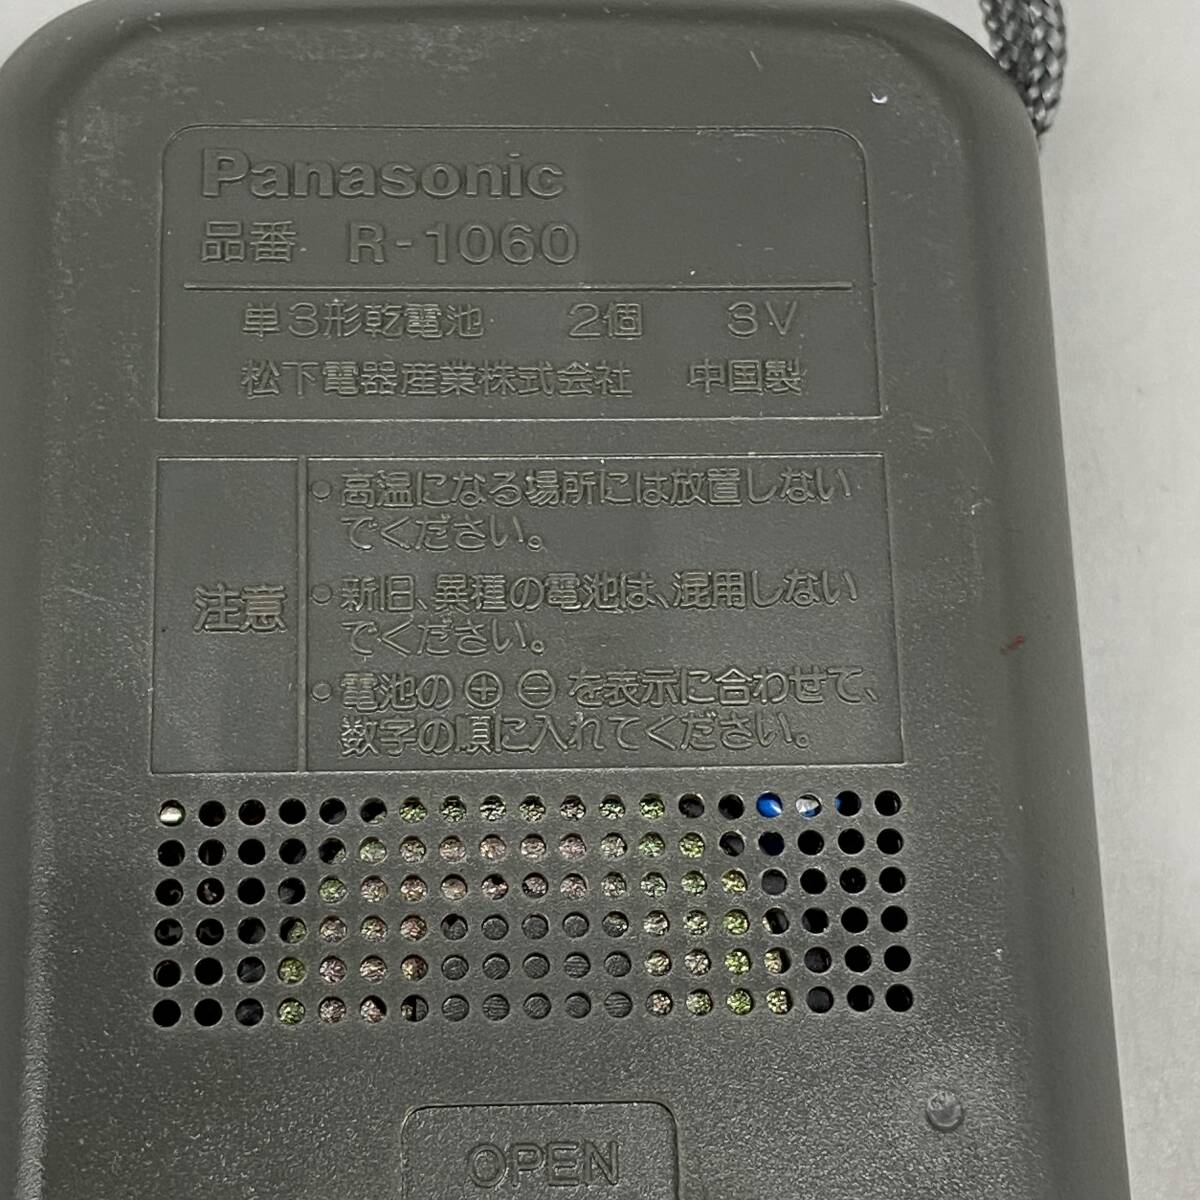 ΣPanasonic パナソニック ラジオ AM RECEIVER R-1060 ブラック 黒色 携帯用 防災グッズ 電池式 動作確認済 中古品ΣK52404_画像8